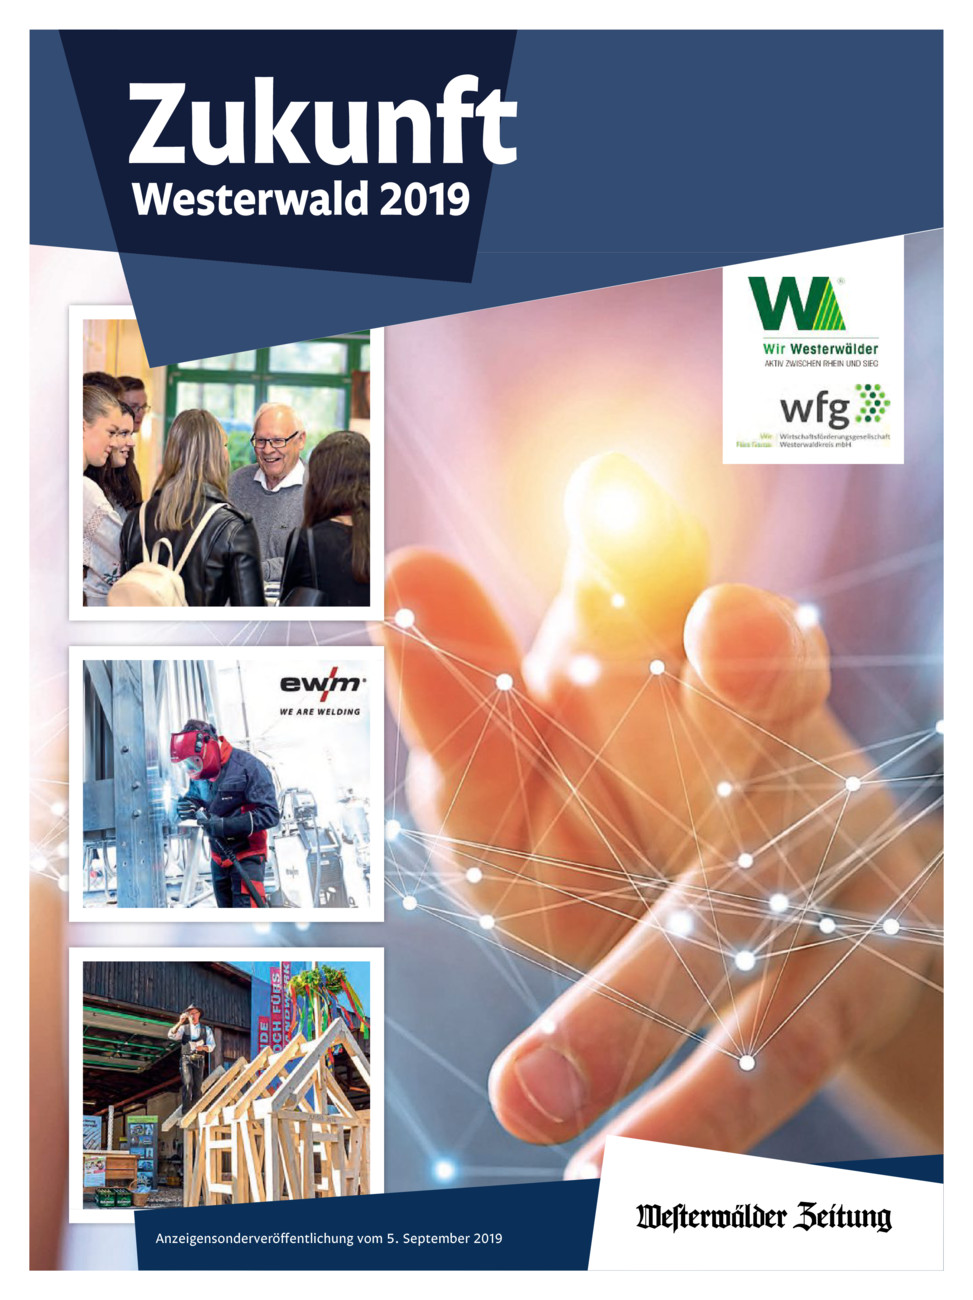 Zukunft Westerwald 2019